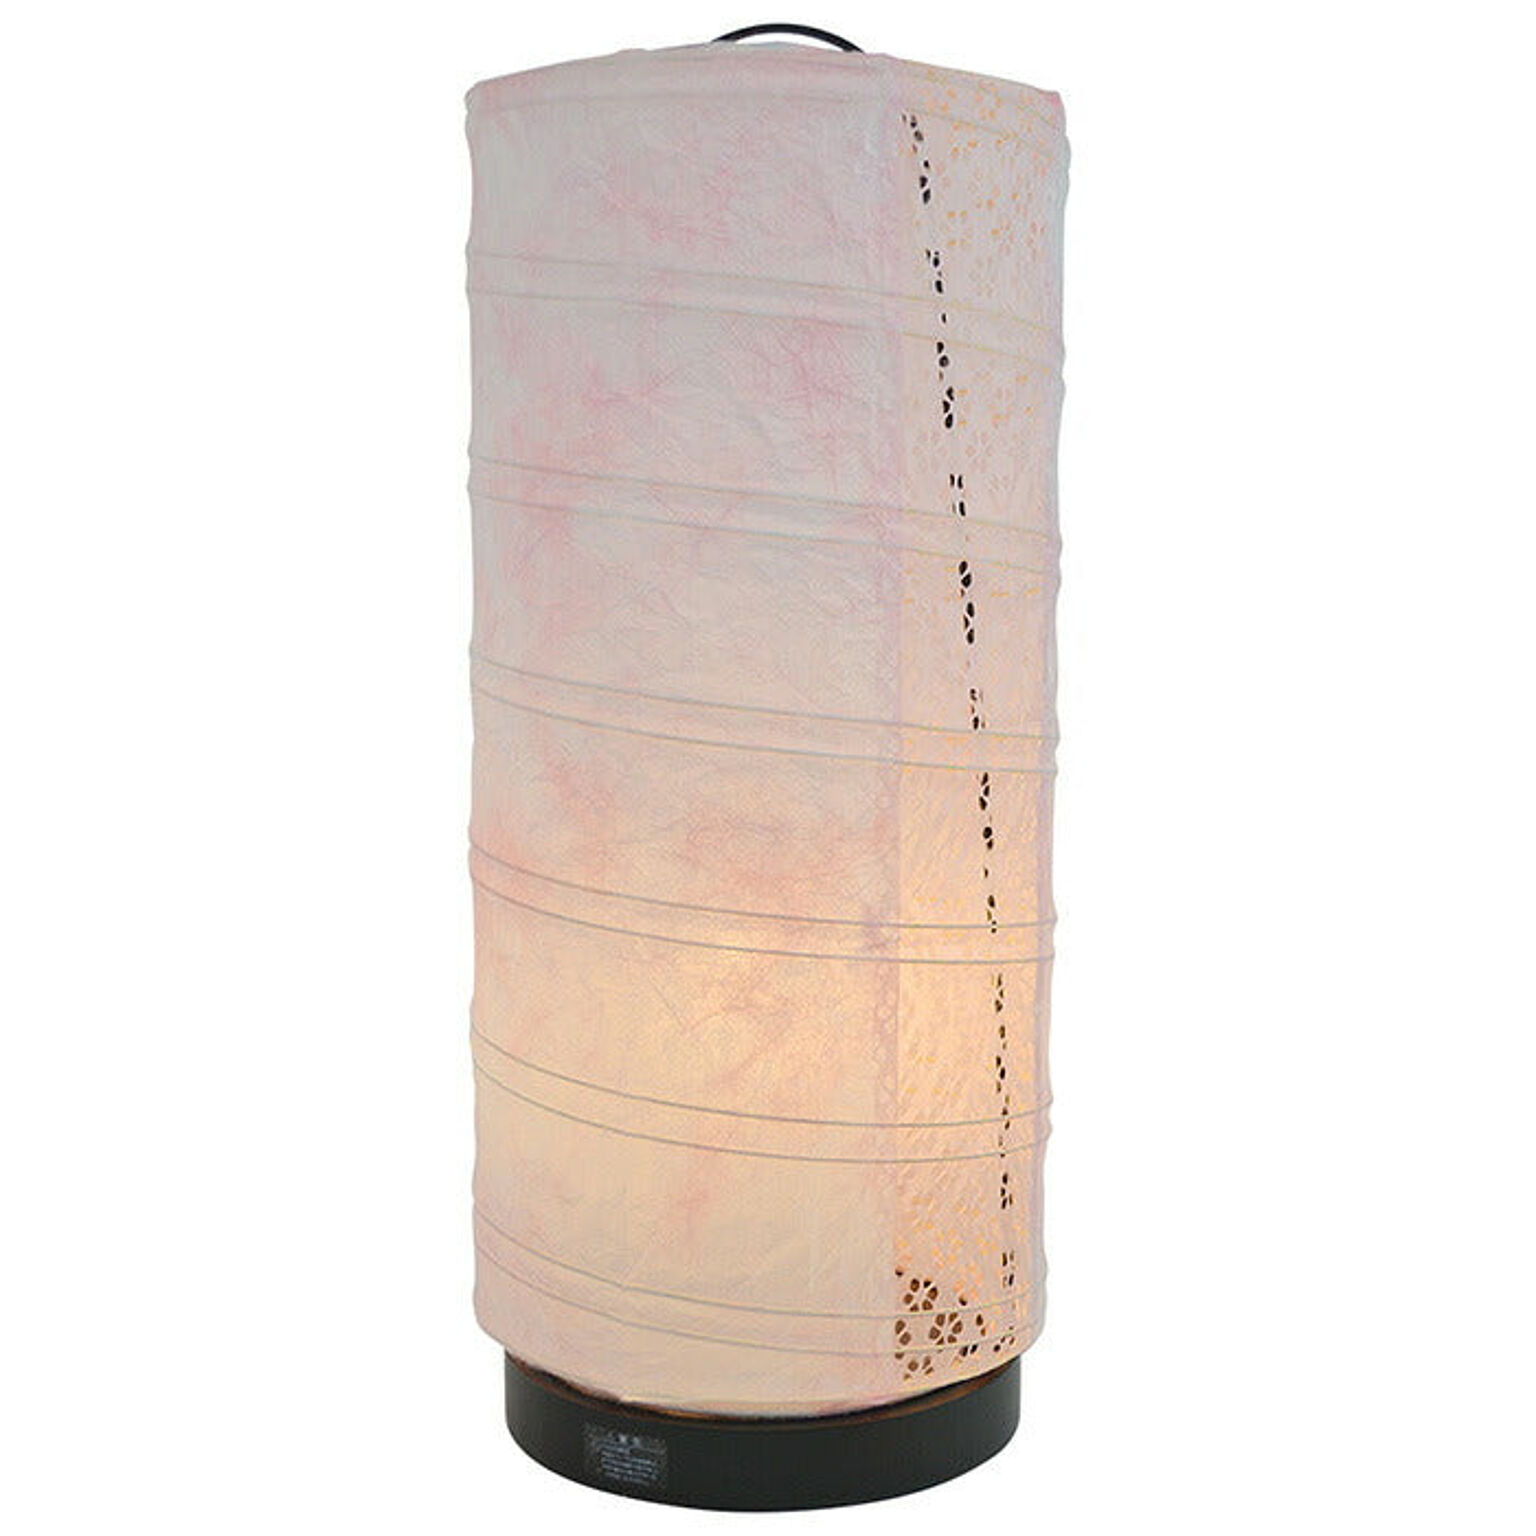 テーブルライト 和紙 aurora 若狭桃×小梅ピンク（1面） 電球付属 幅180x奥行180x高さ430mm 彩光デザイン